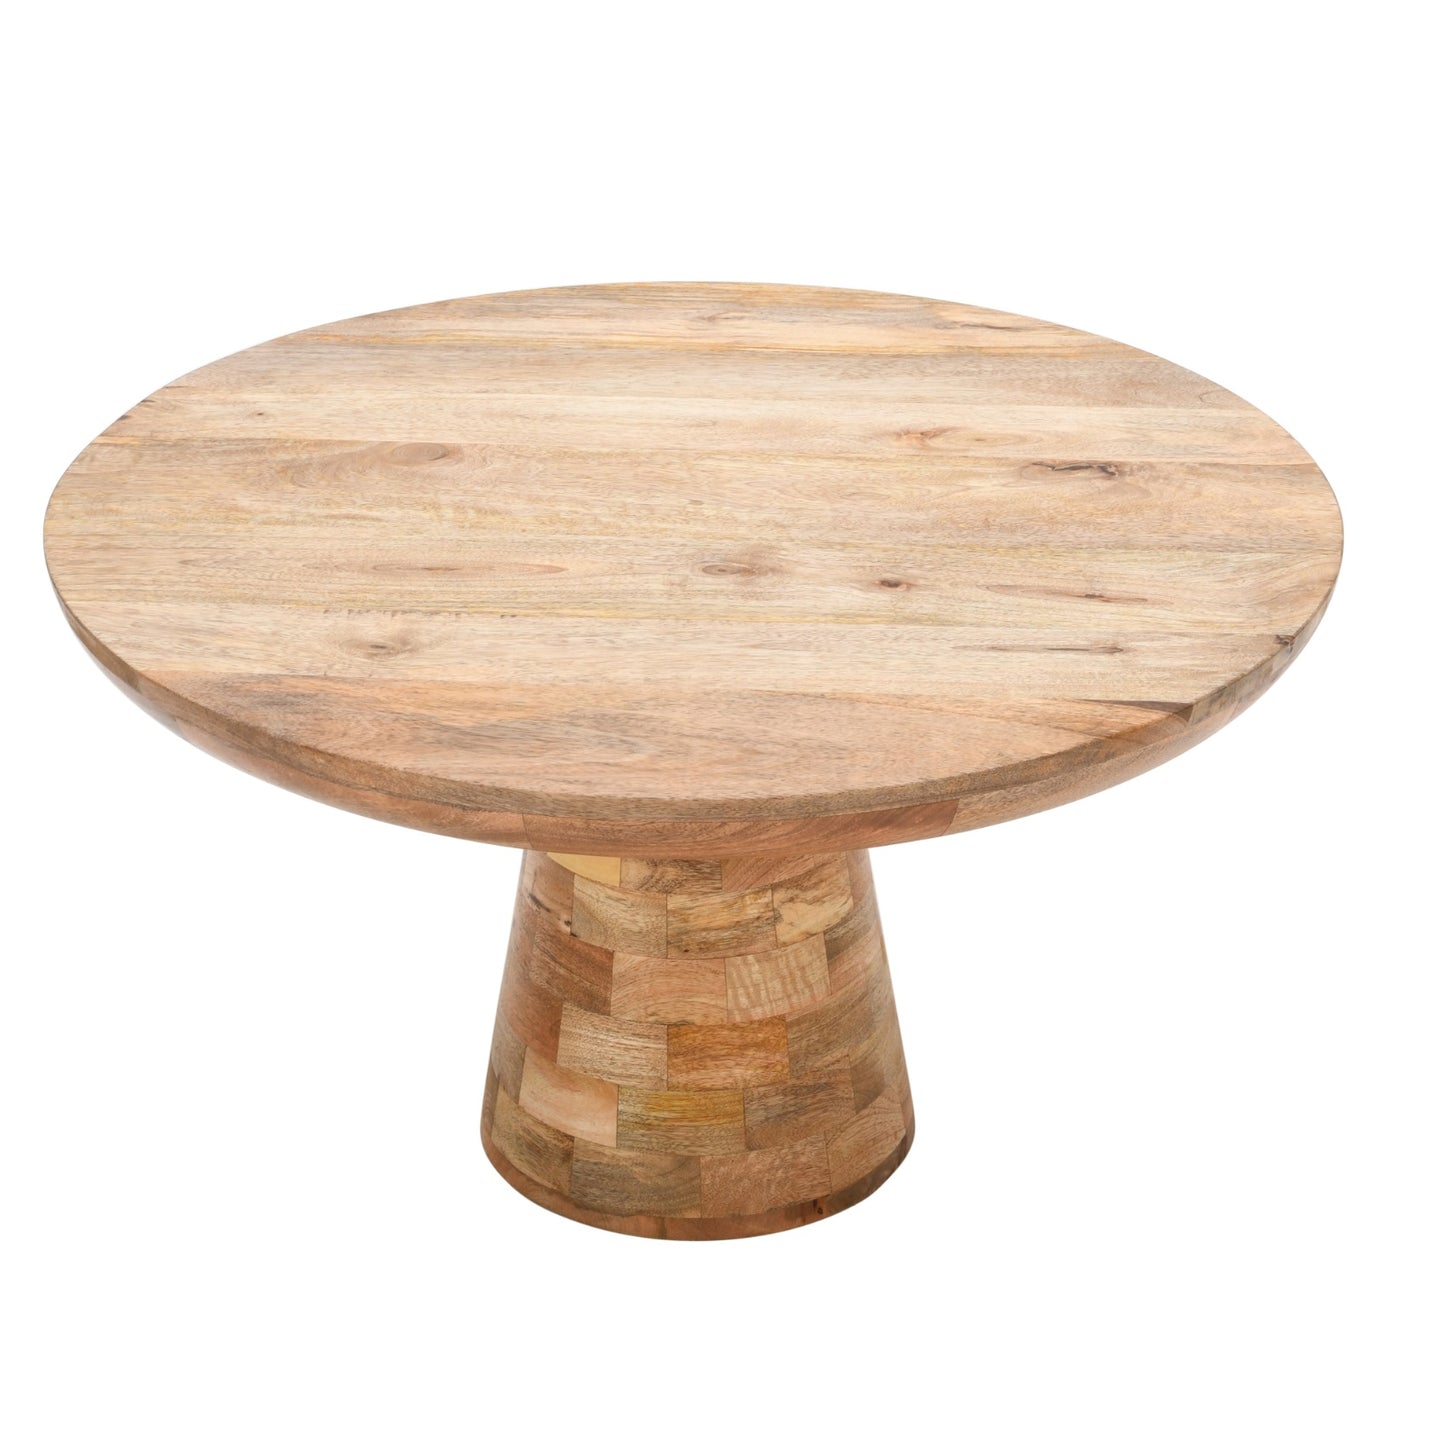 Surrey Solid Wood Coffee Table Mushroom Style